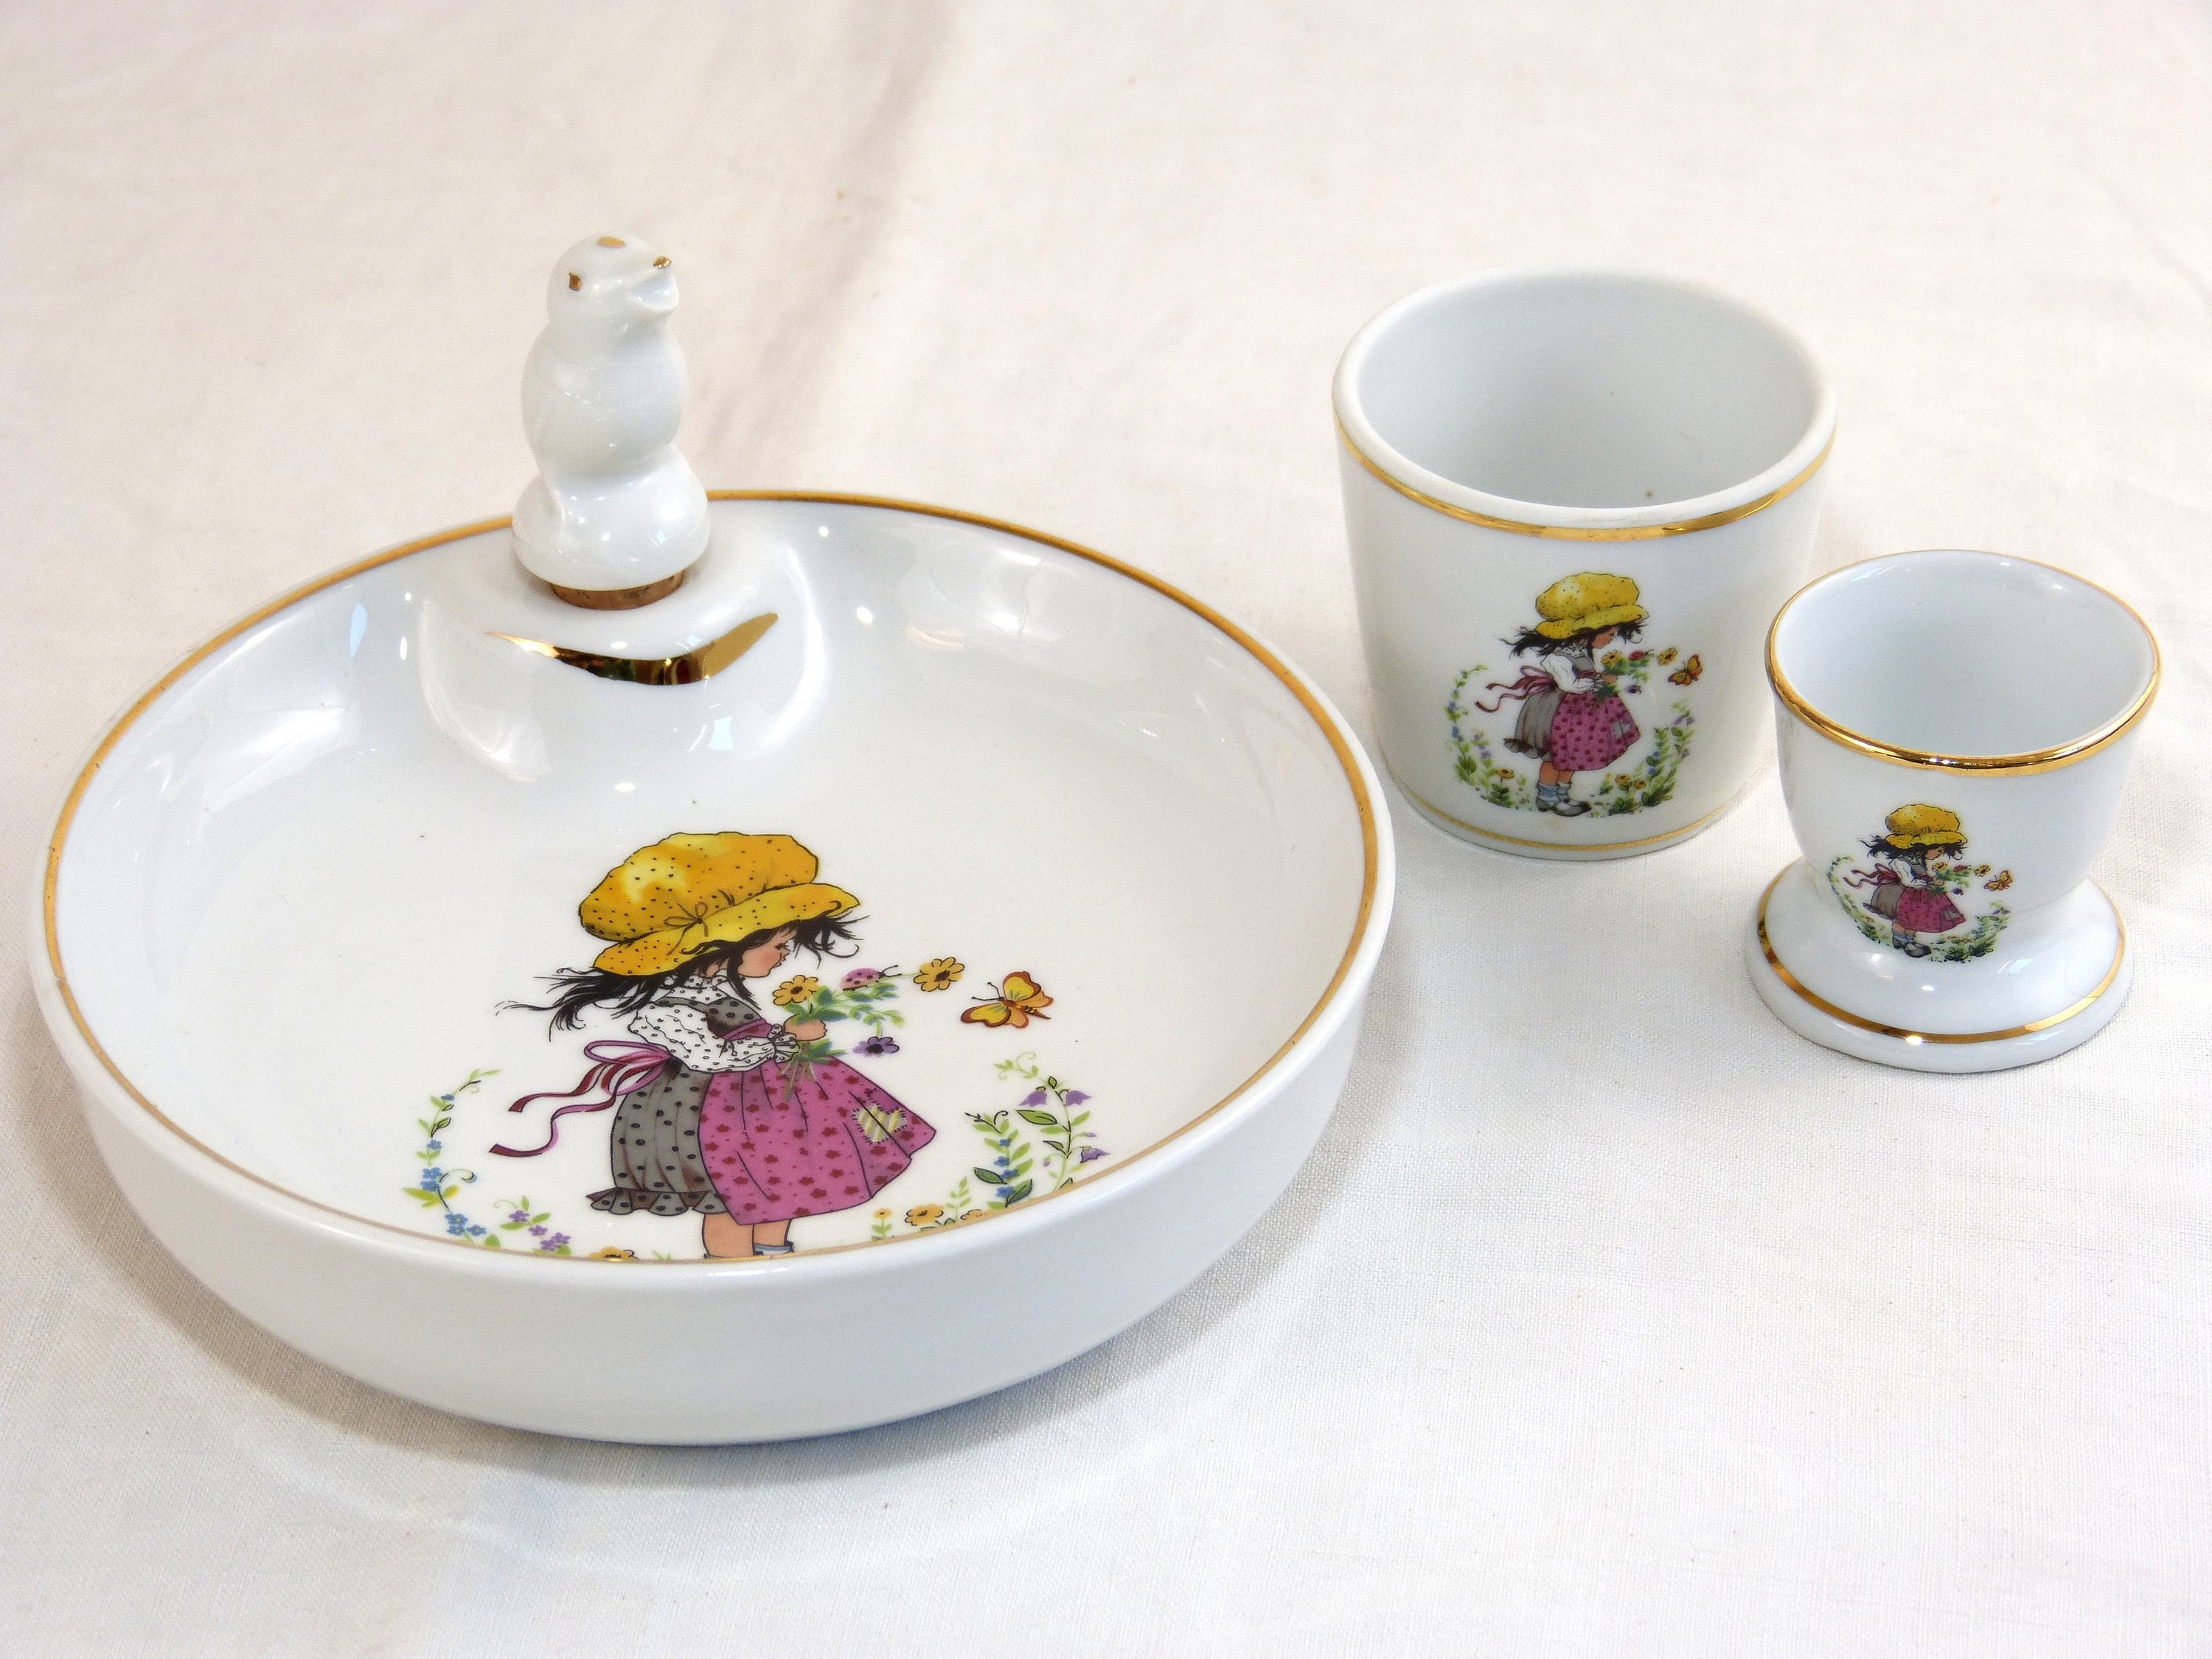 Large Vintage Porcelain Cup with Orange Flower Decor signed Pillivuyt